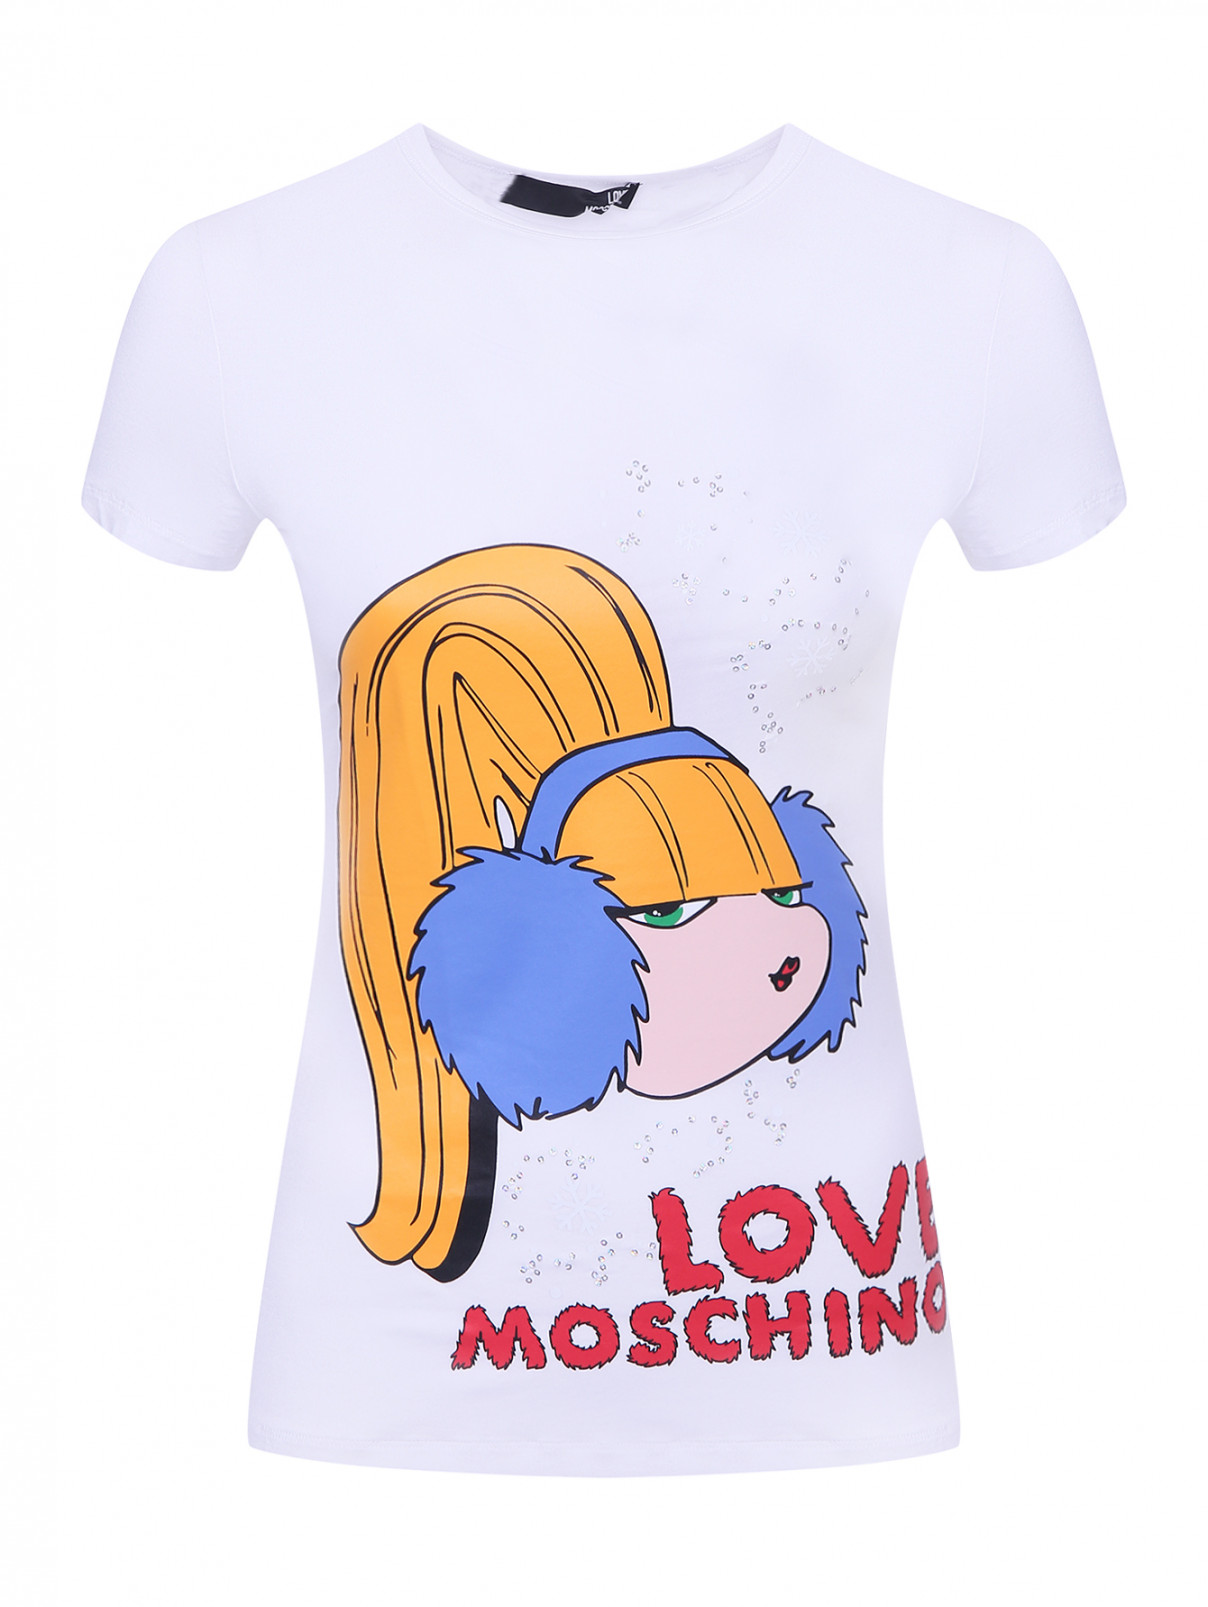 Трикотажная футболка с принтом и пайетками Love Moschino  –  Общий вид  – Цвет:  Белый